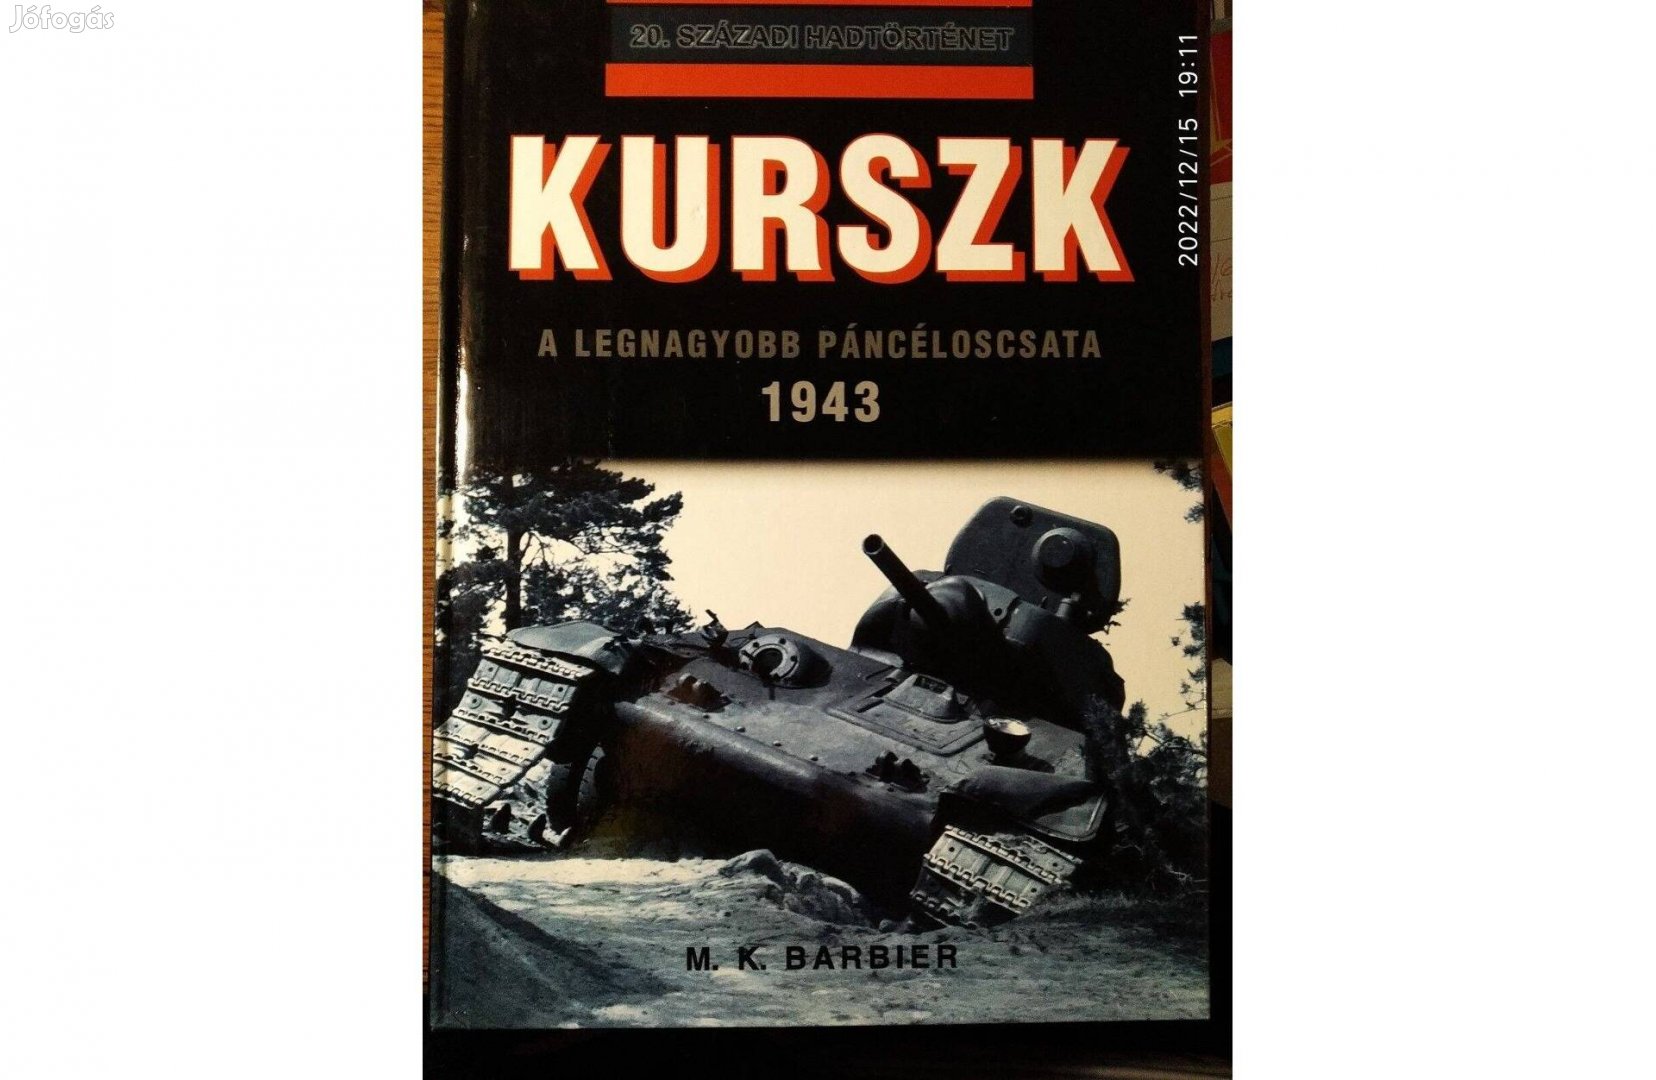 Kurszk 1943 - A legnagyobb páncélos csata (20. századi hadtörténet)